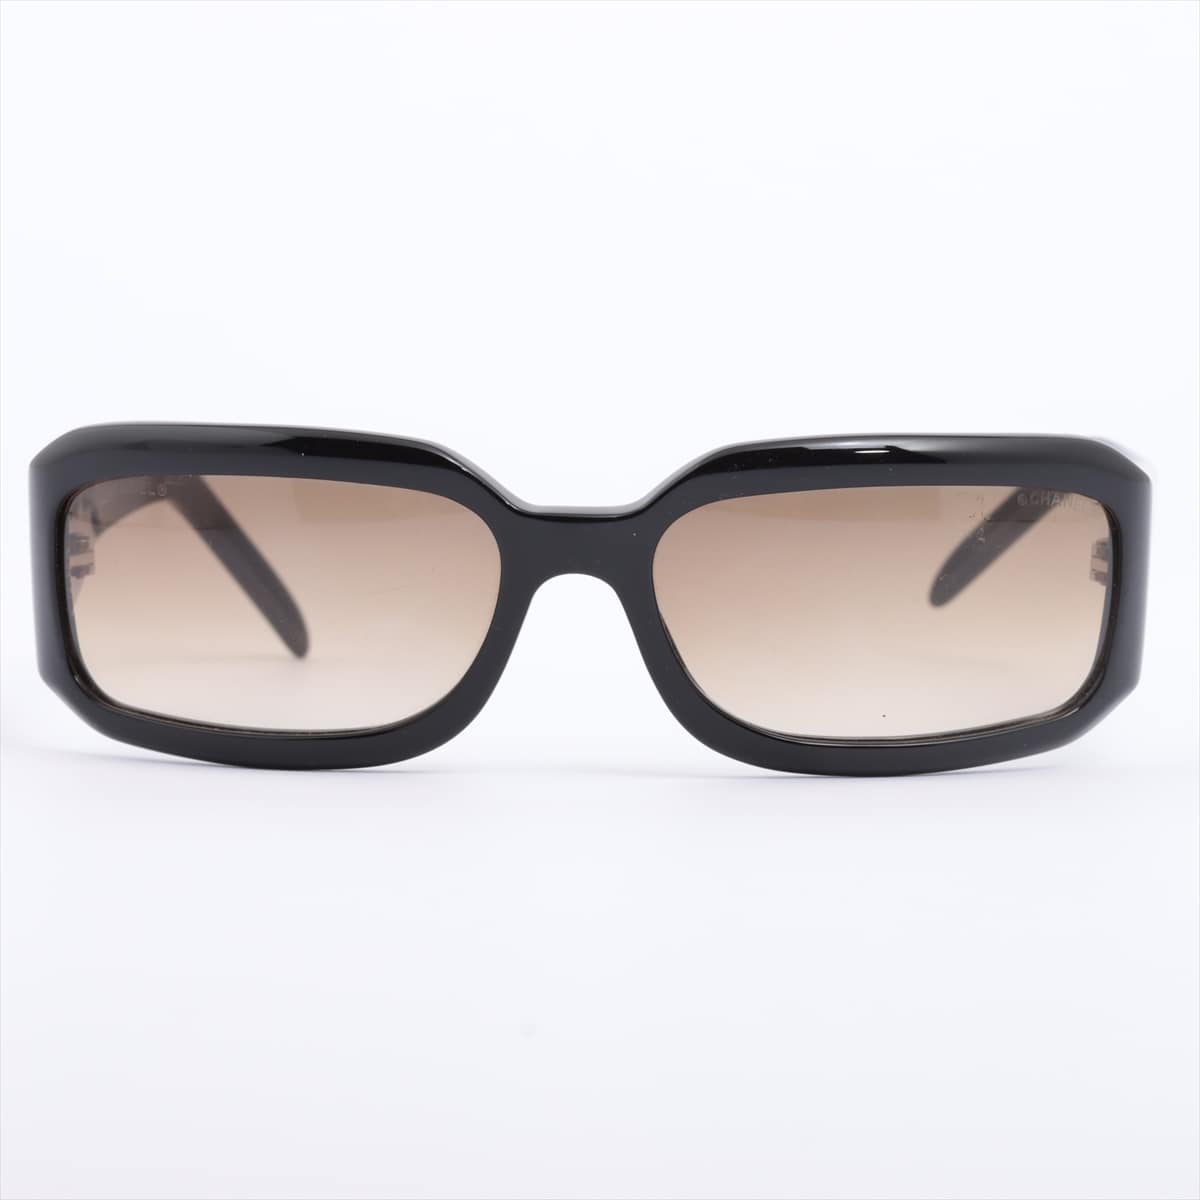 Chanel 5064-B Coco Mark Sunglasses Plastic Black